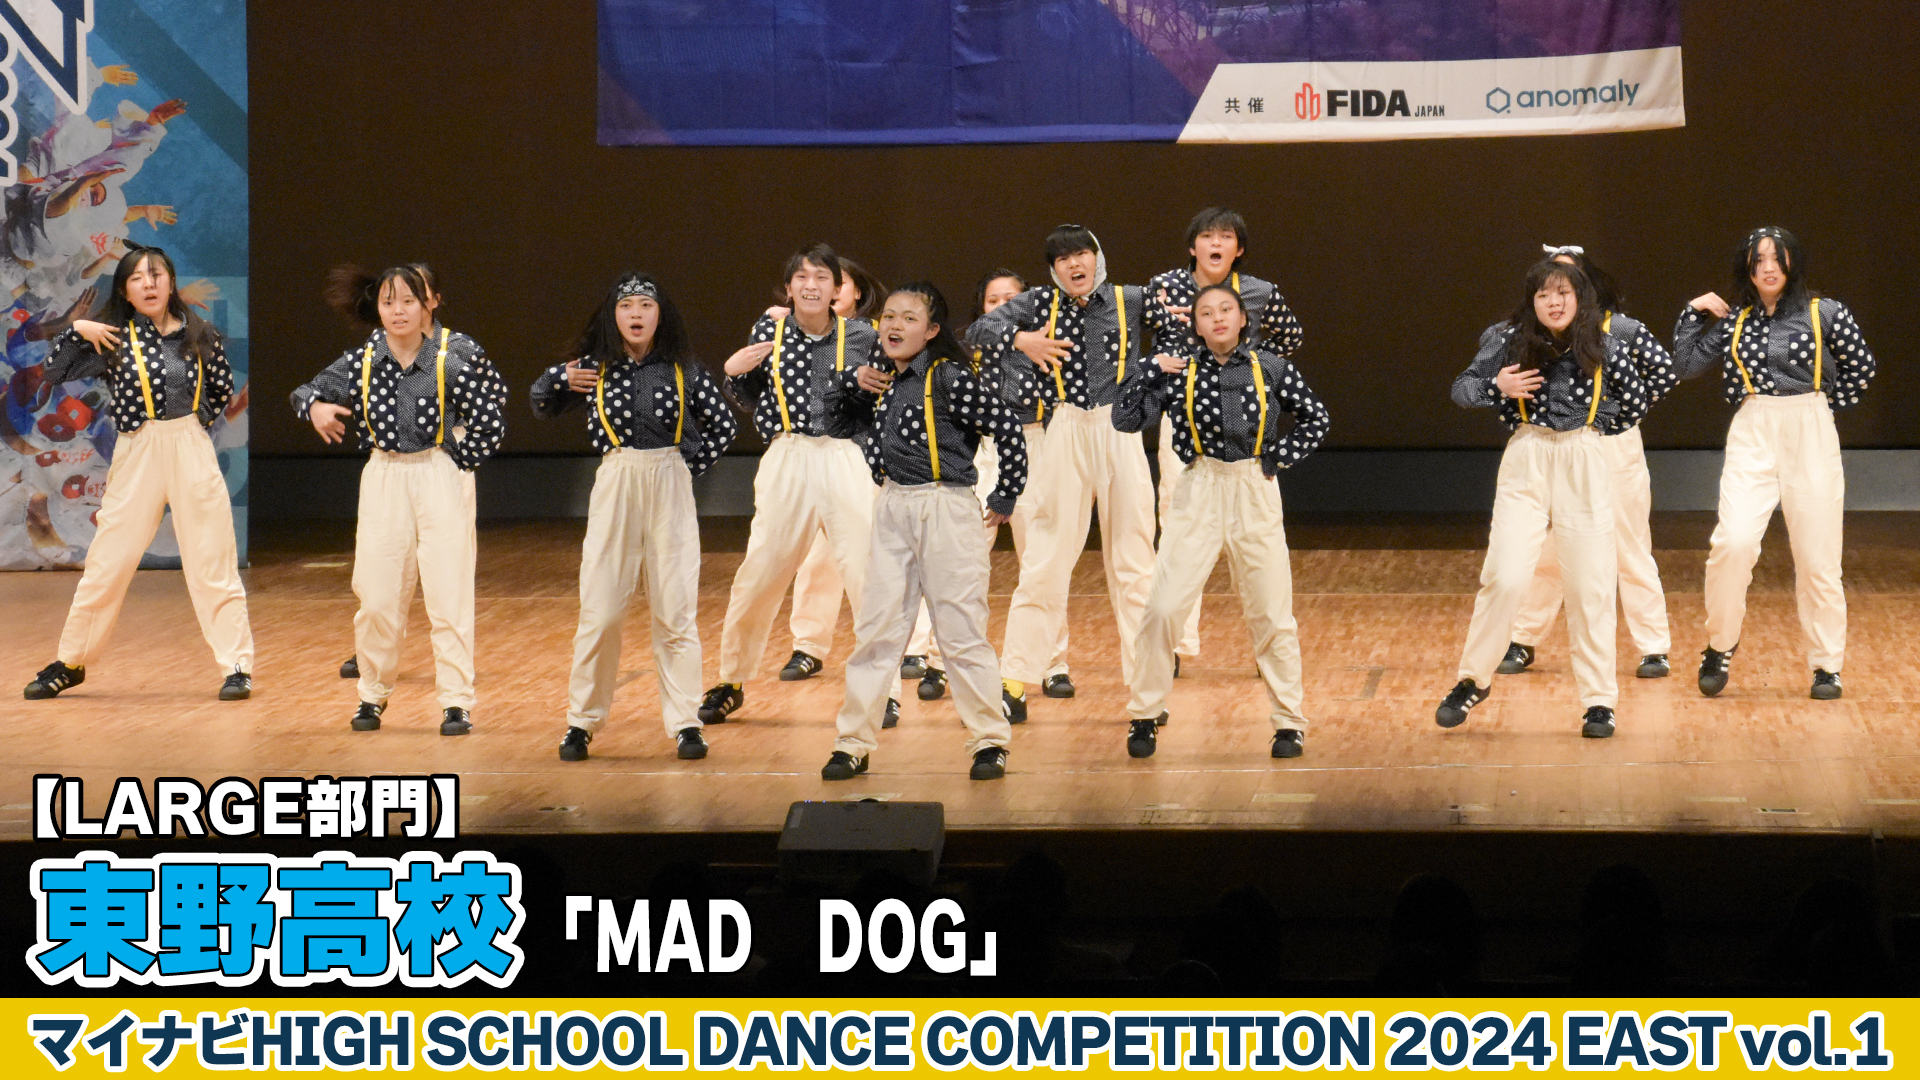 【動画】東野高校「MAD DOG」がLARGE部門で演技を披露！＜マイナビHIGH SCHOOL DANCE COMPETITION 2024 EAST vol.1＞